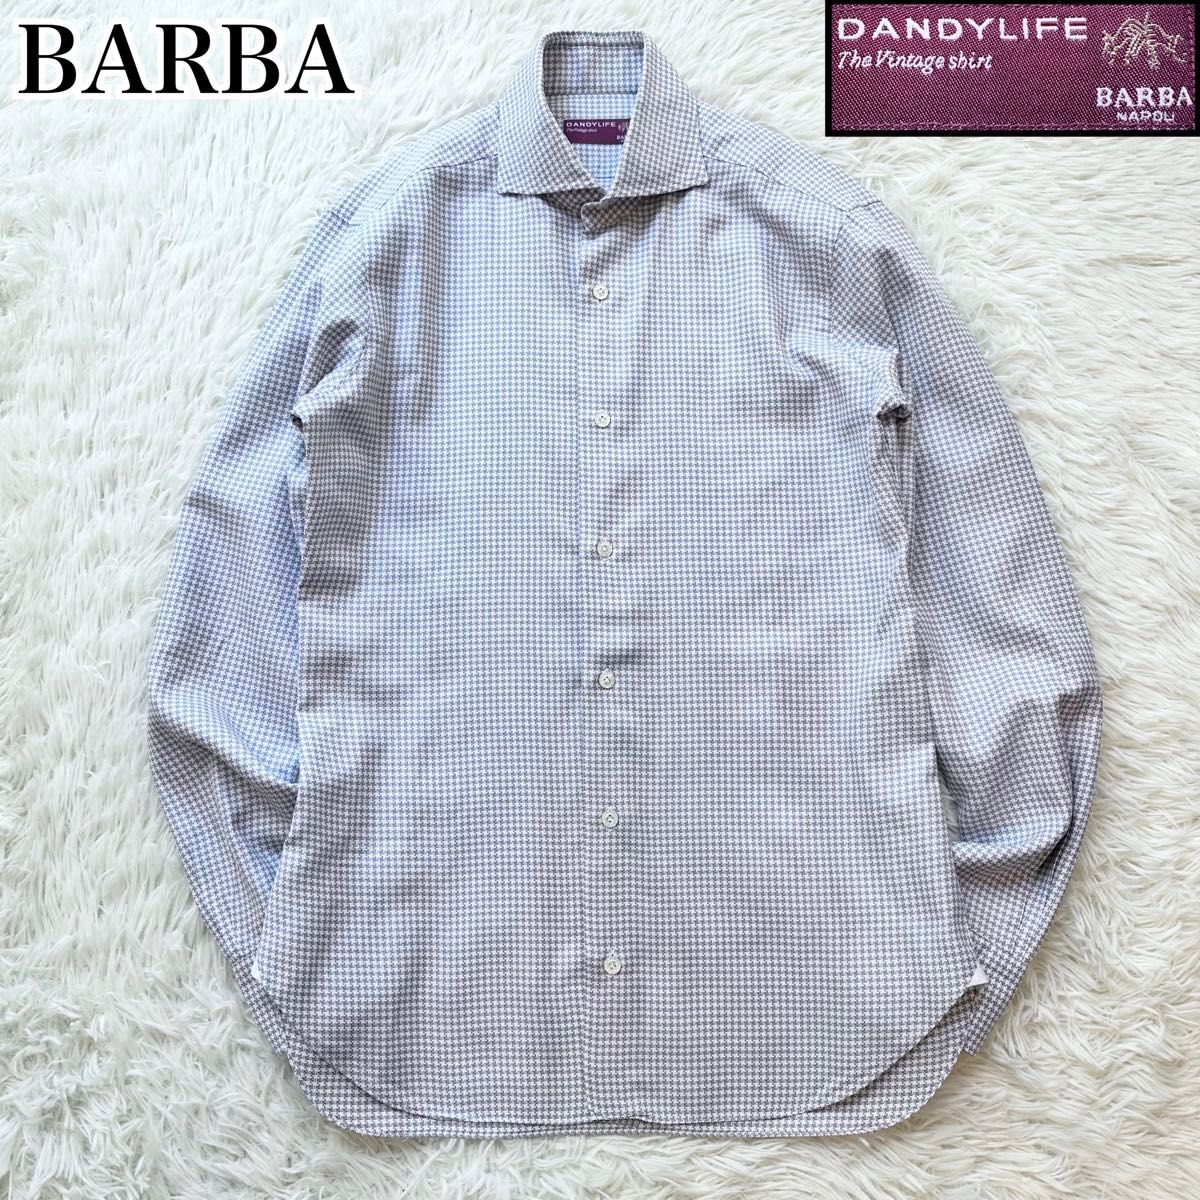 BARBA バルバ ホリゾンタルカラーシャツ カッタウェイ 長袖シャツ コットン100% 綿 イタリア製 DANDYLIFE 38